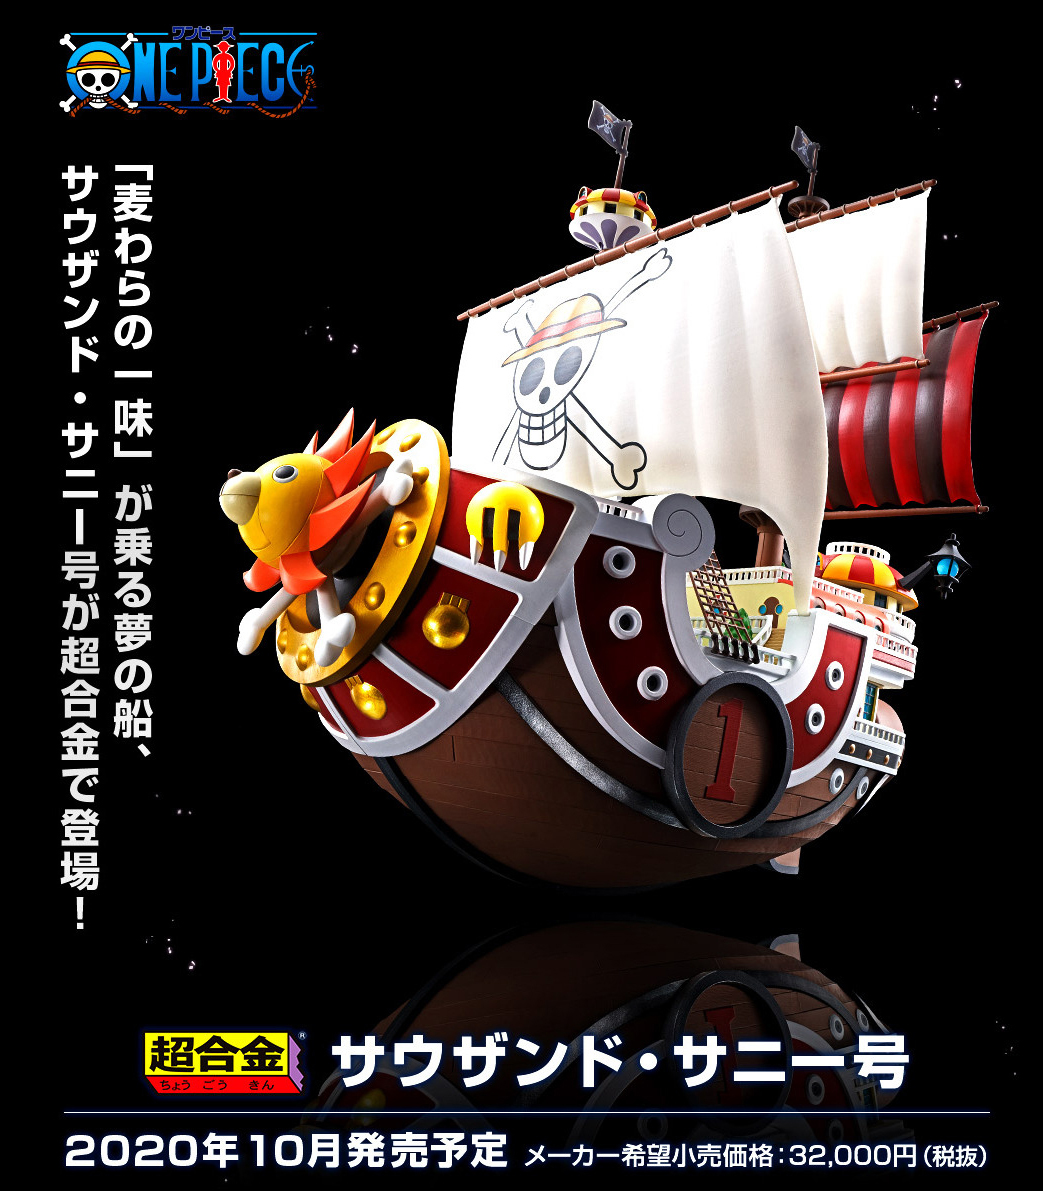 ワンピース 麦わらの一味の夢の船 サウザンド サニー号 が超合金で10月に登場 Game Watch